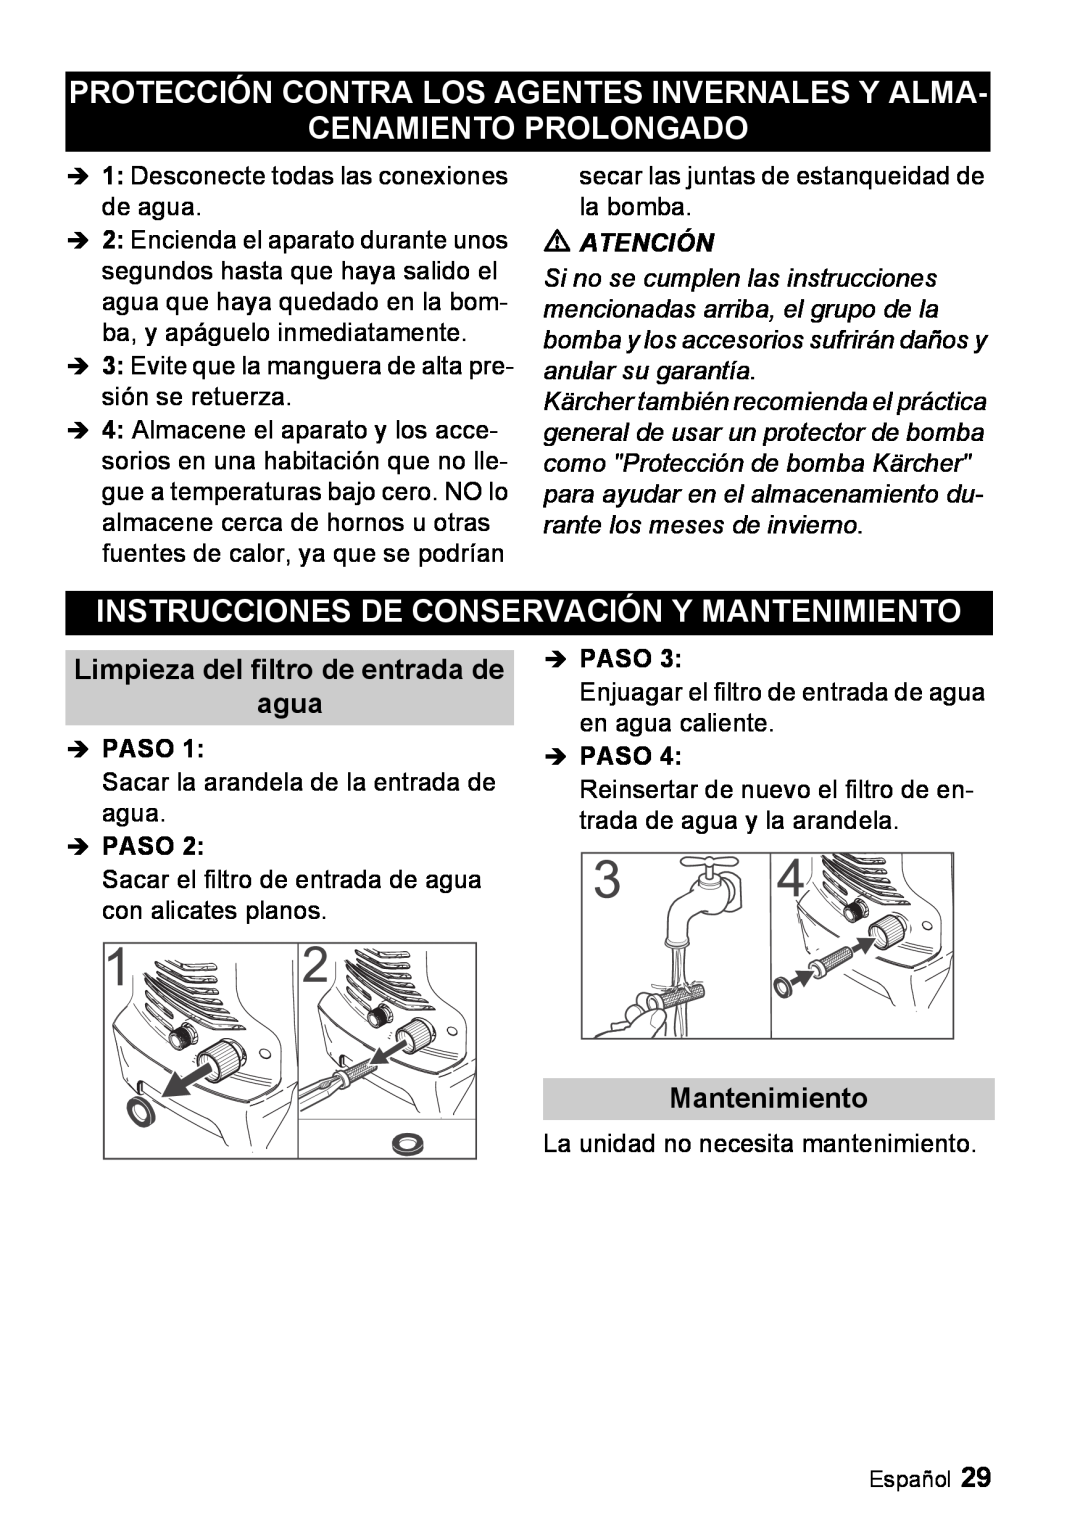 Karcher K 3.67 M manual Protección Contra Los Agentes Invernales Y Alma, Cenamiento Prolongado, Mantenimiento, Îpaso 